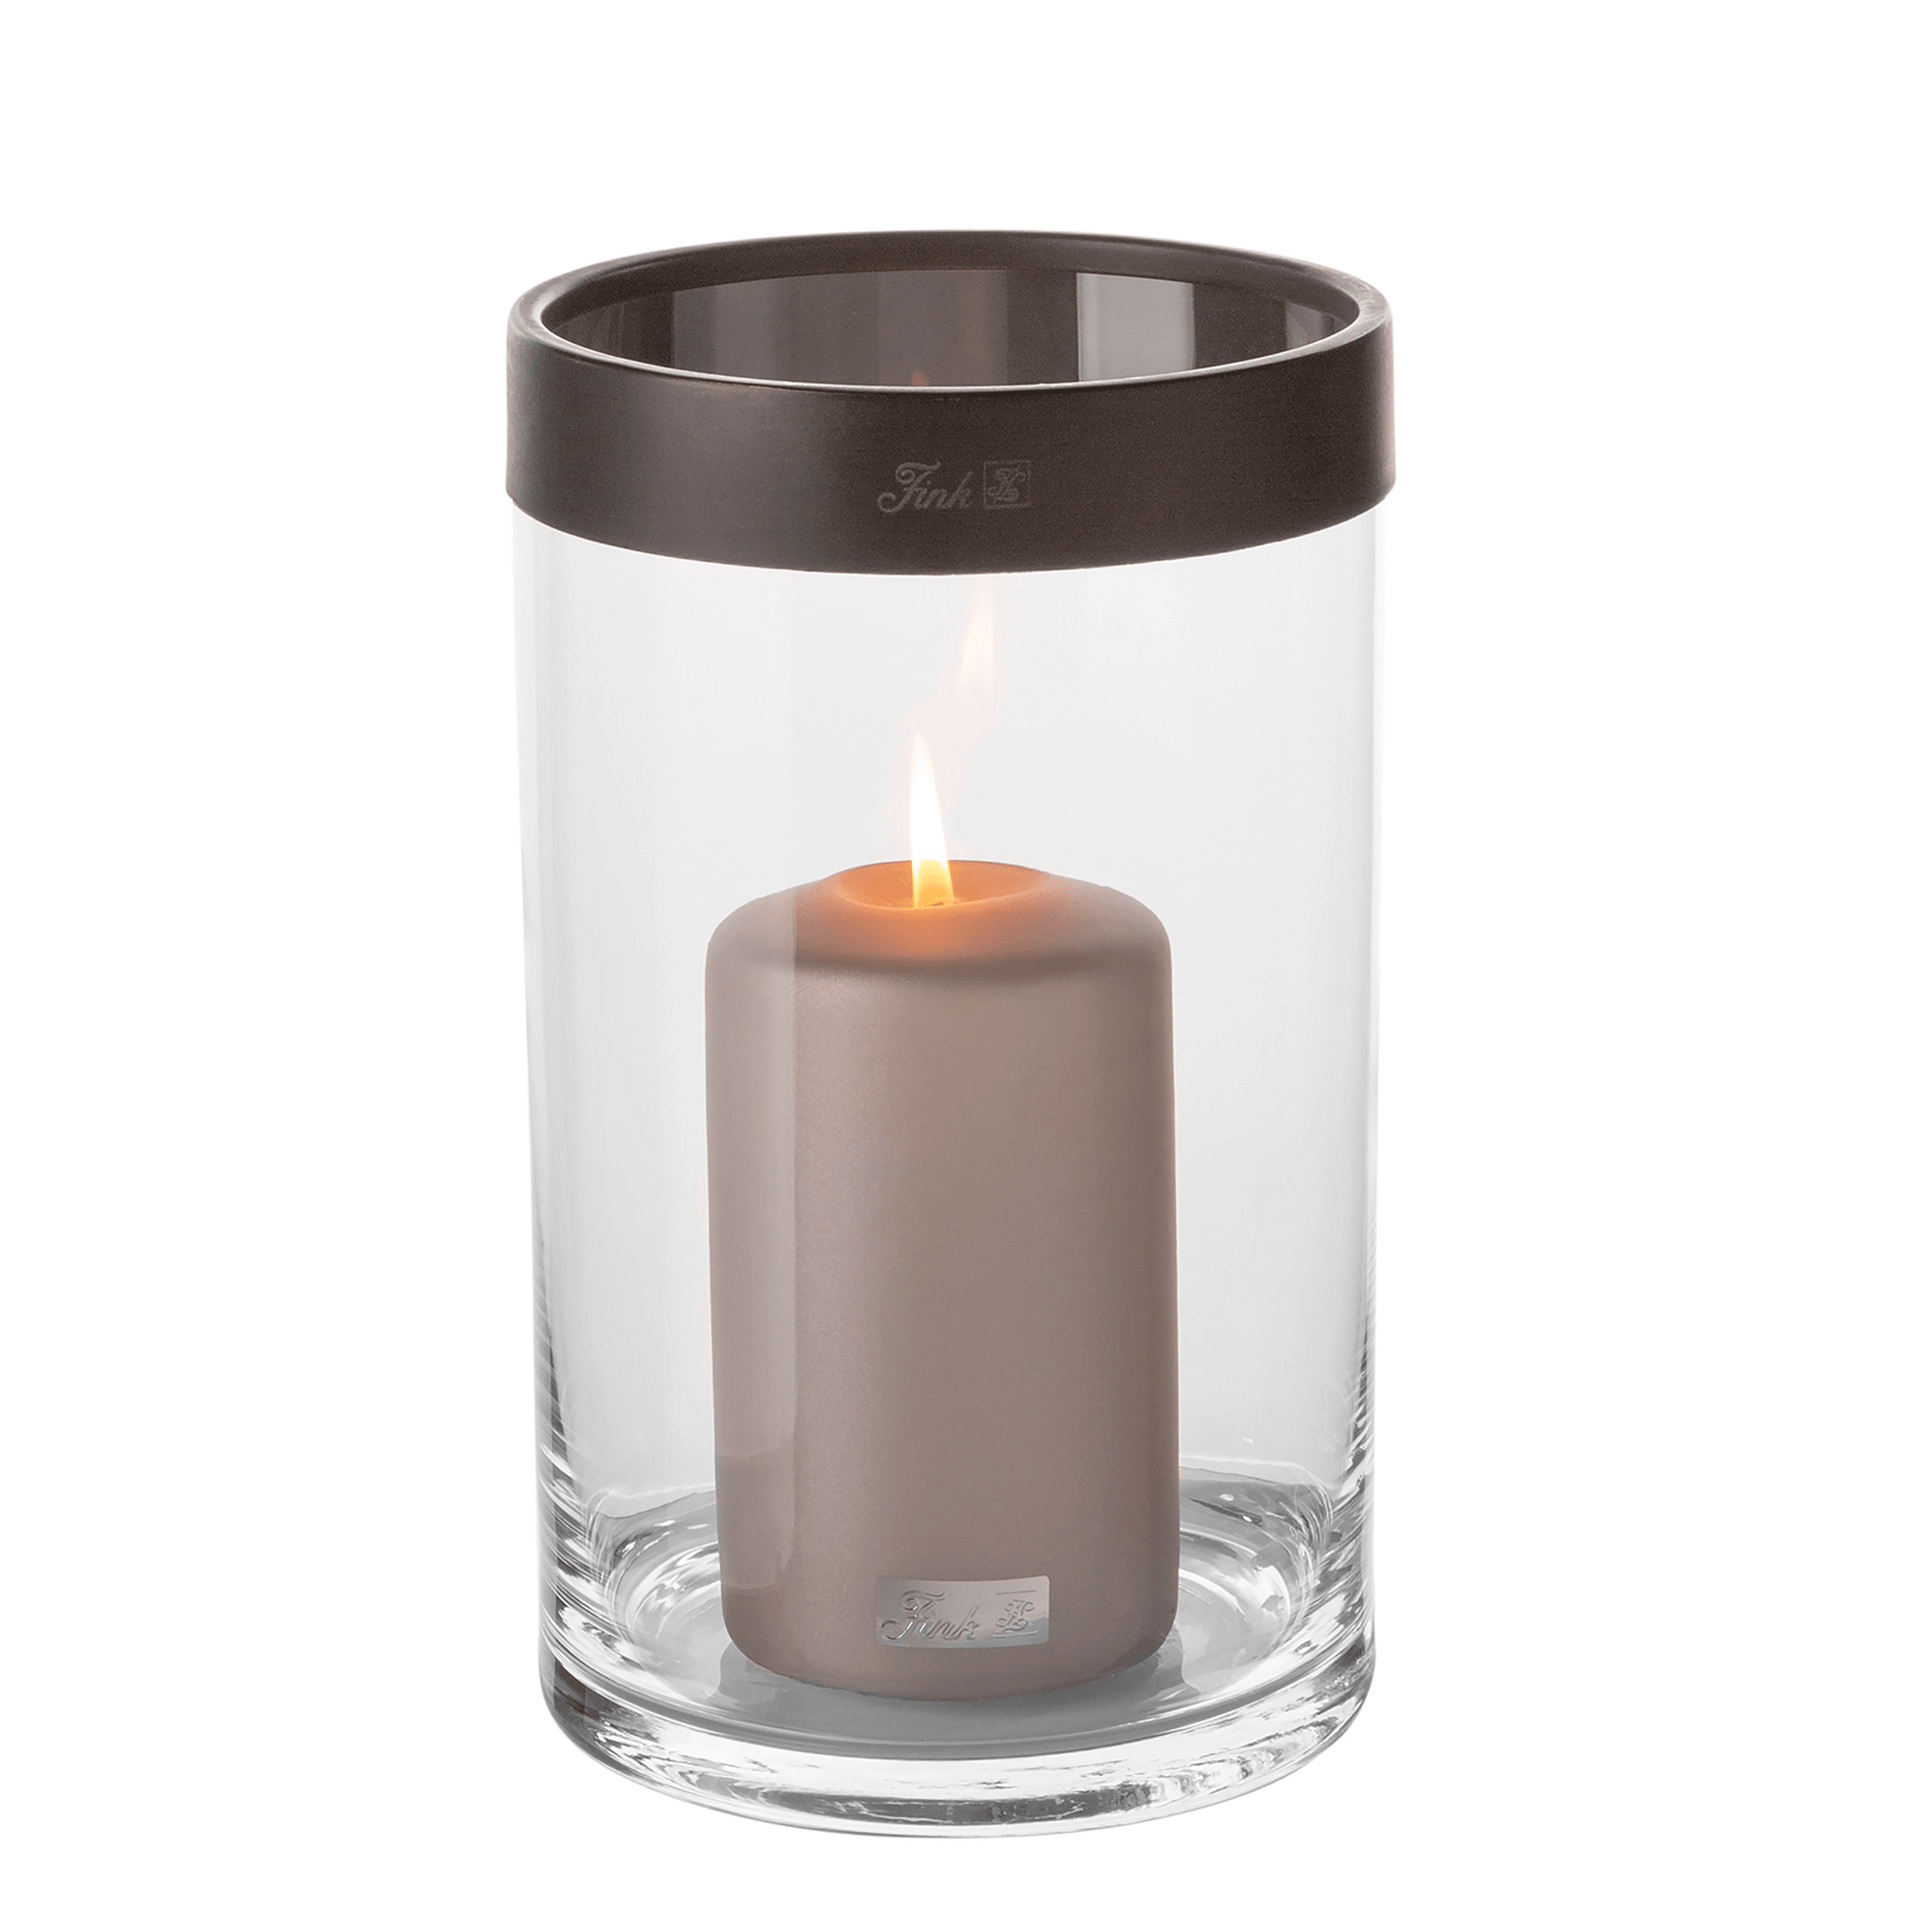 Fink Living RIBBON Glaszylinder Windlicht Kerzenlicht Handarbeit Hochwertig Unkat - HomeDesign Knaus wir schaffen Inspirationen 